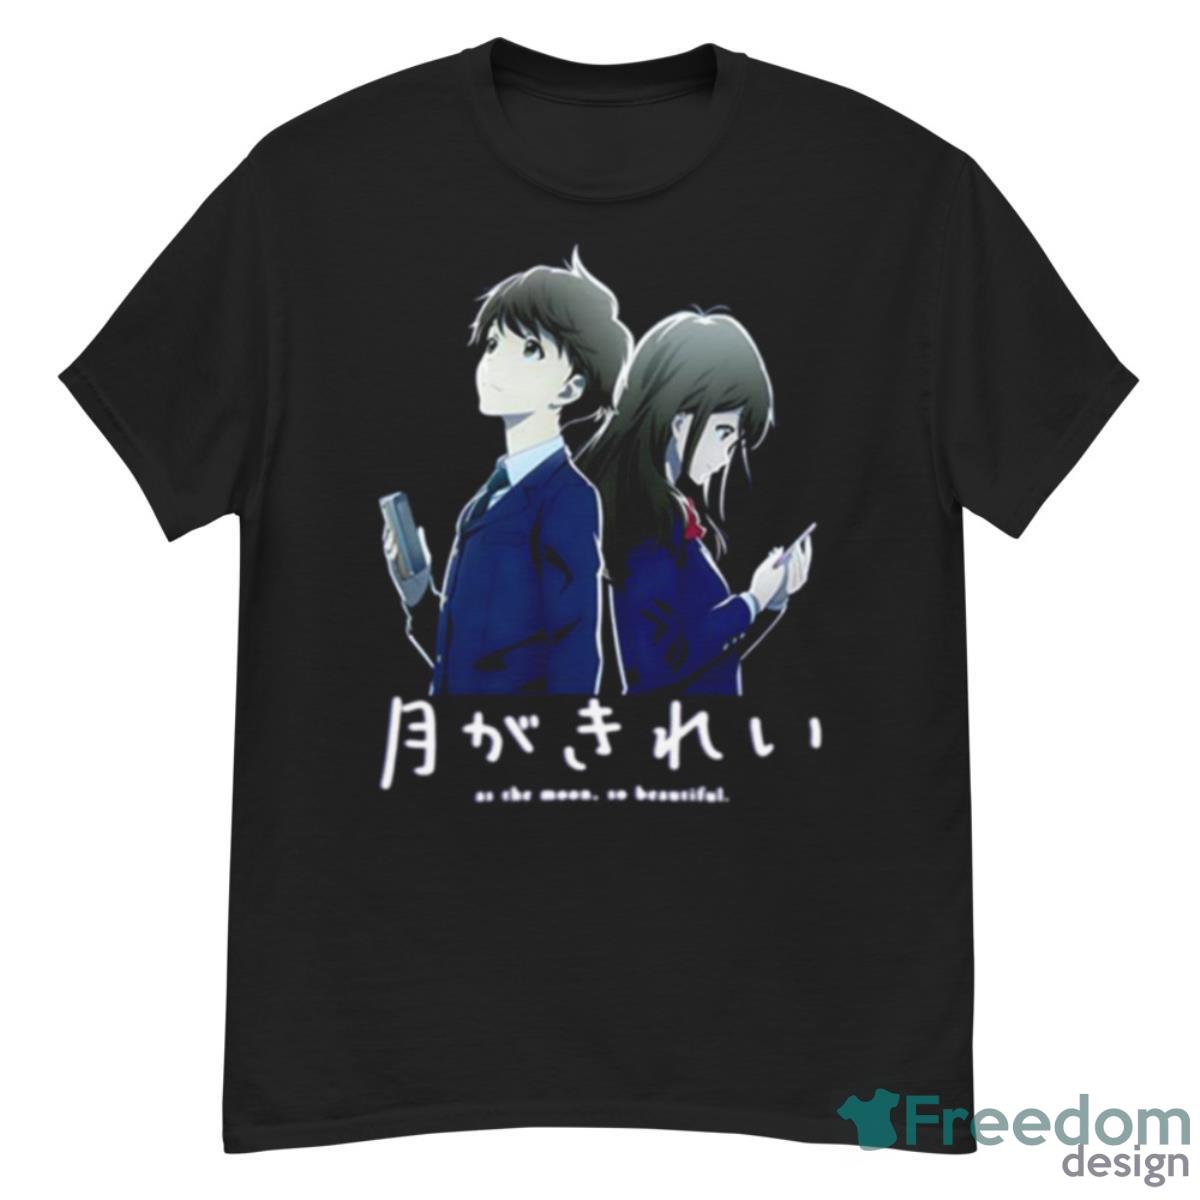 Tsuki Ga Kirei As The Moon So Beautiful shirt - G500 Men’s Classic T-Shirt